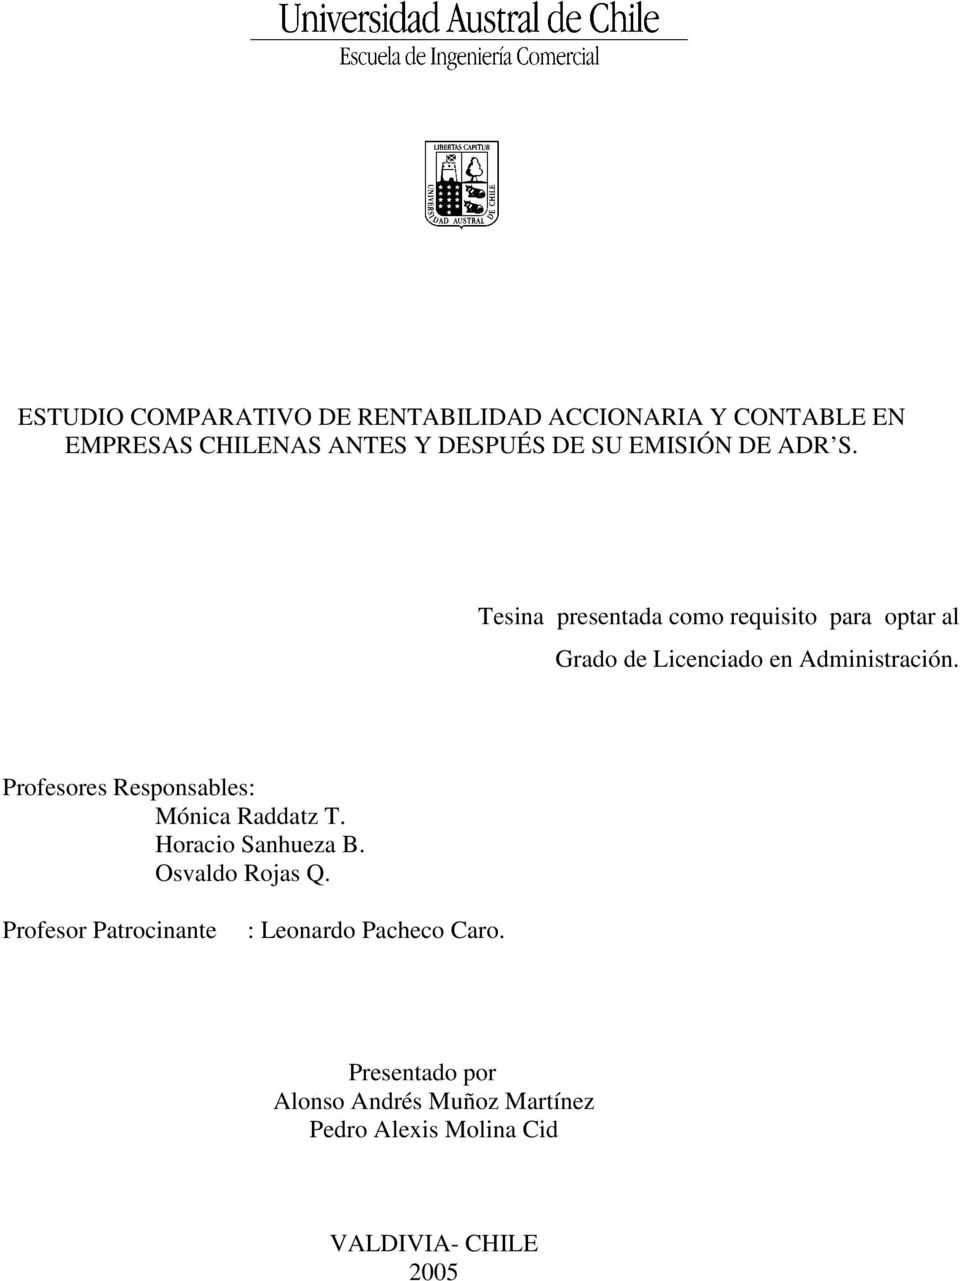 Profesores Responsables: Mónica Raddatz T. Horacio Sanhueza B. Osvaldo Rojas Q.